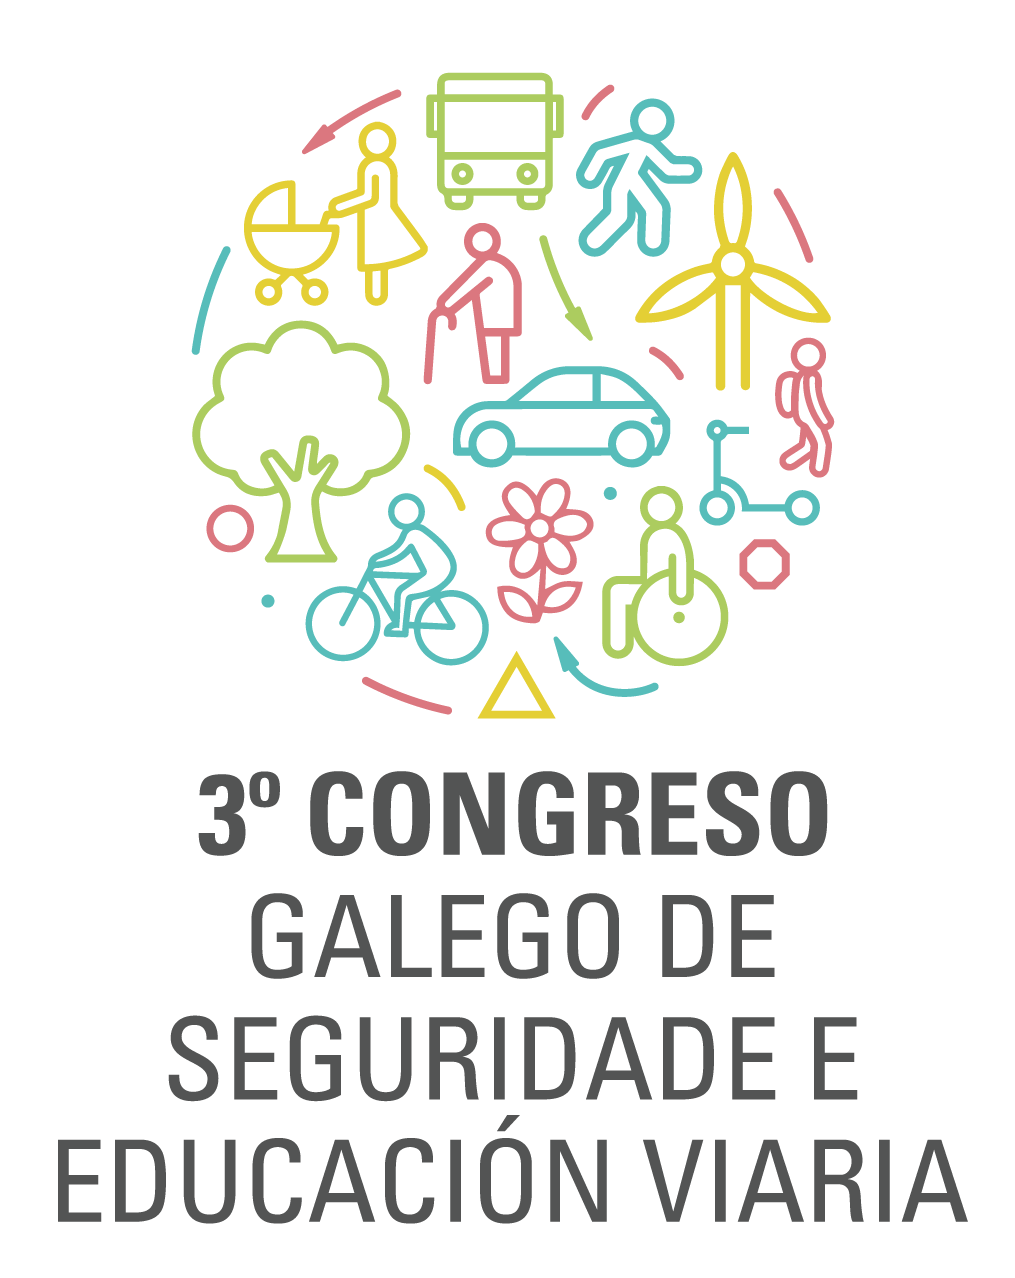 3 congreso gallego de seguridad y educacion vial